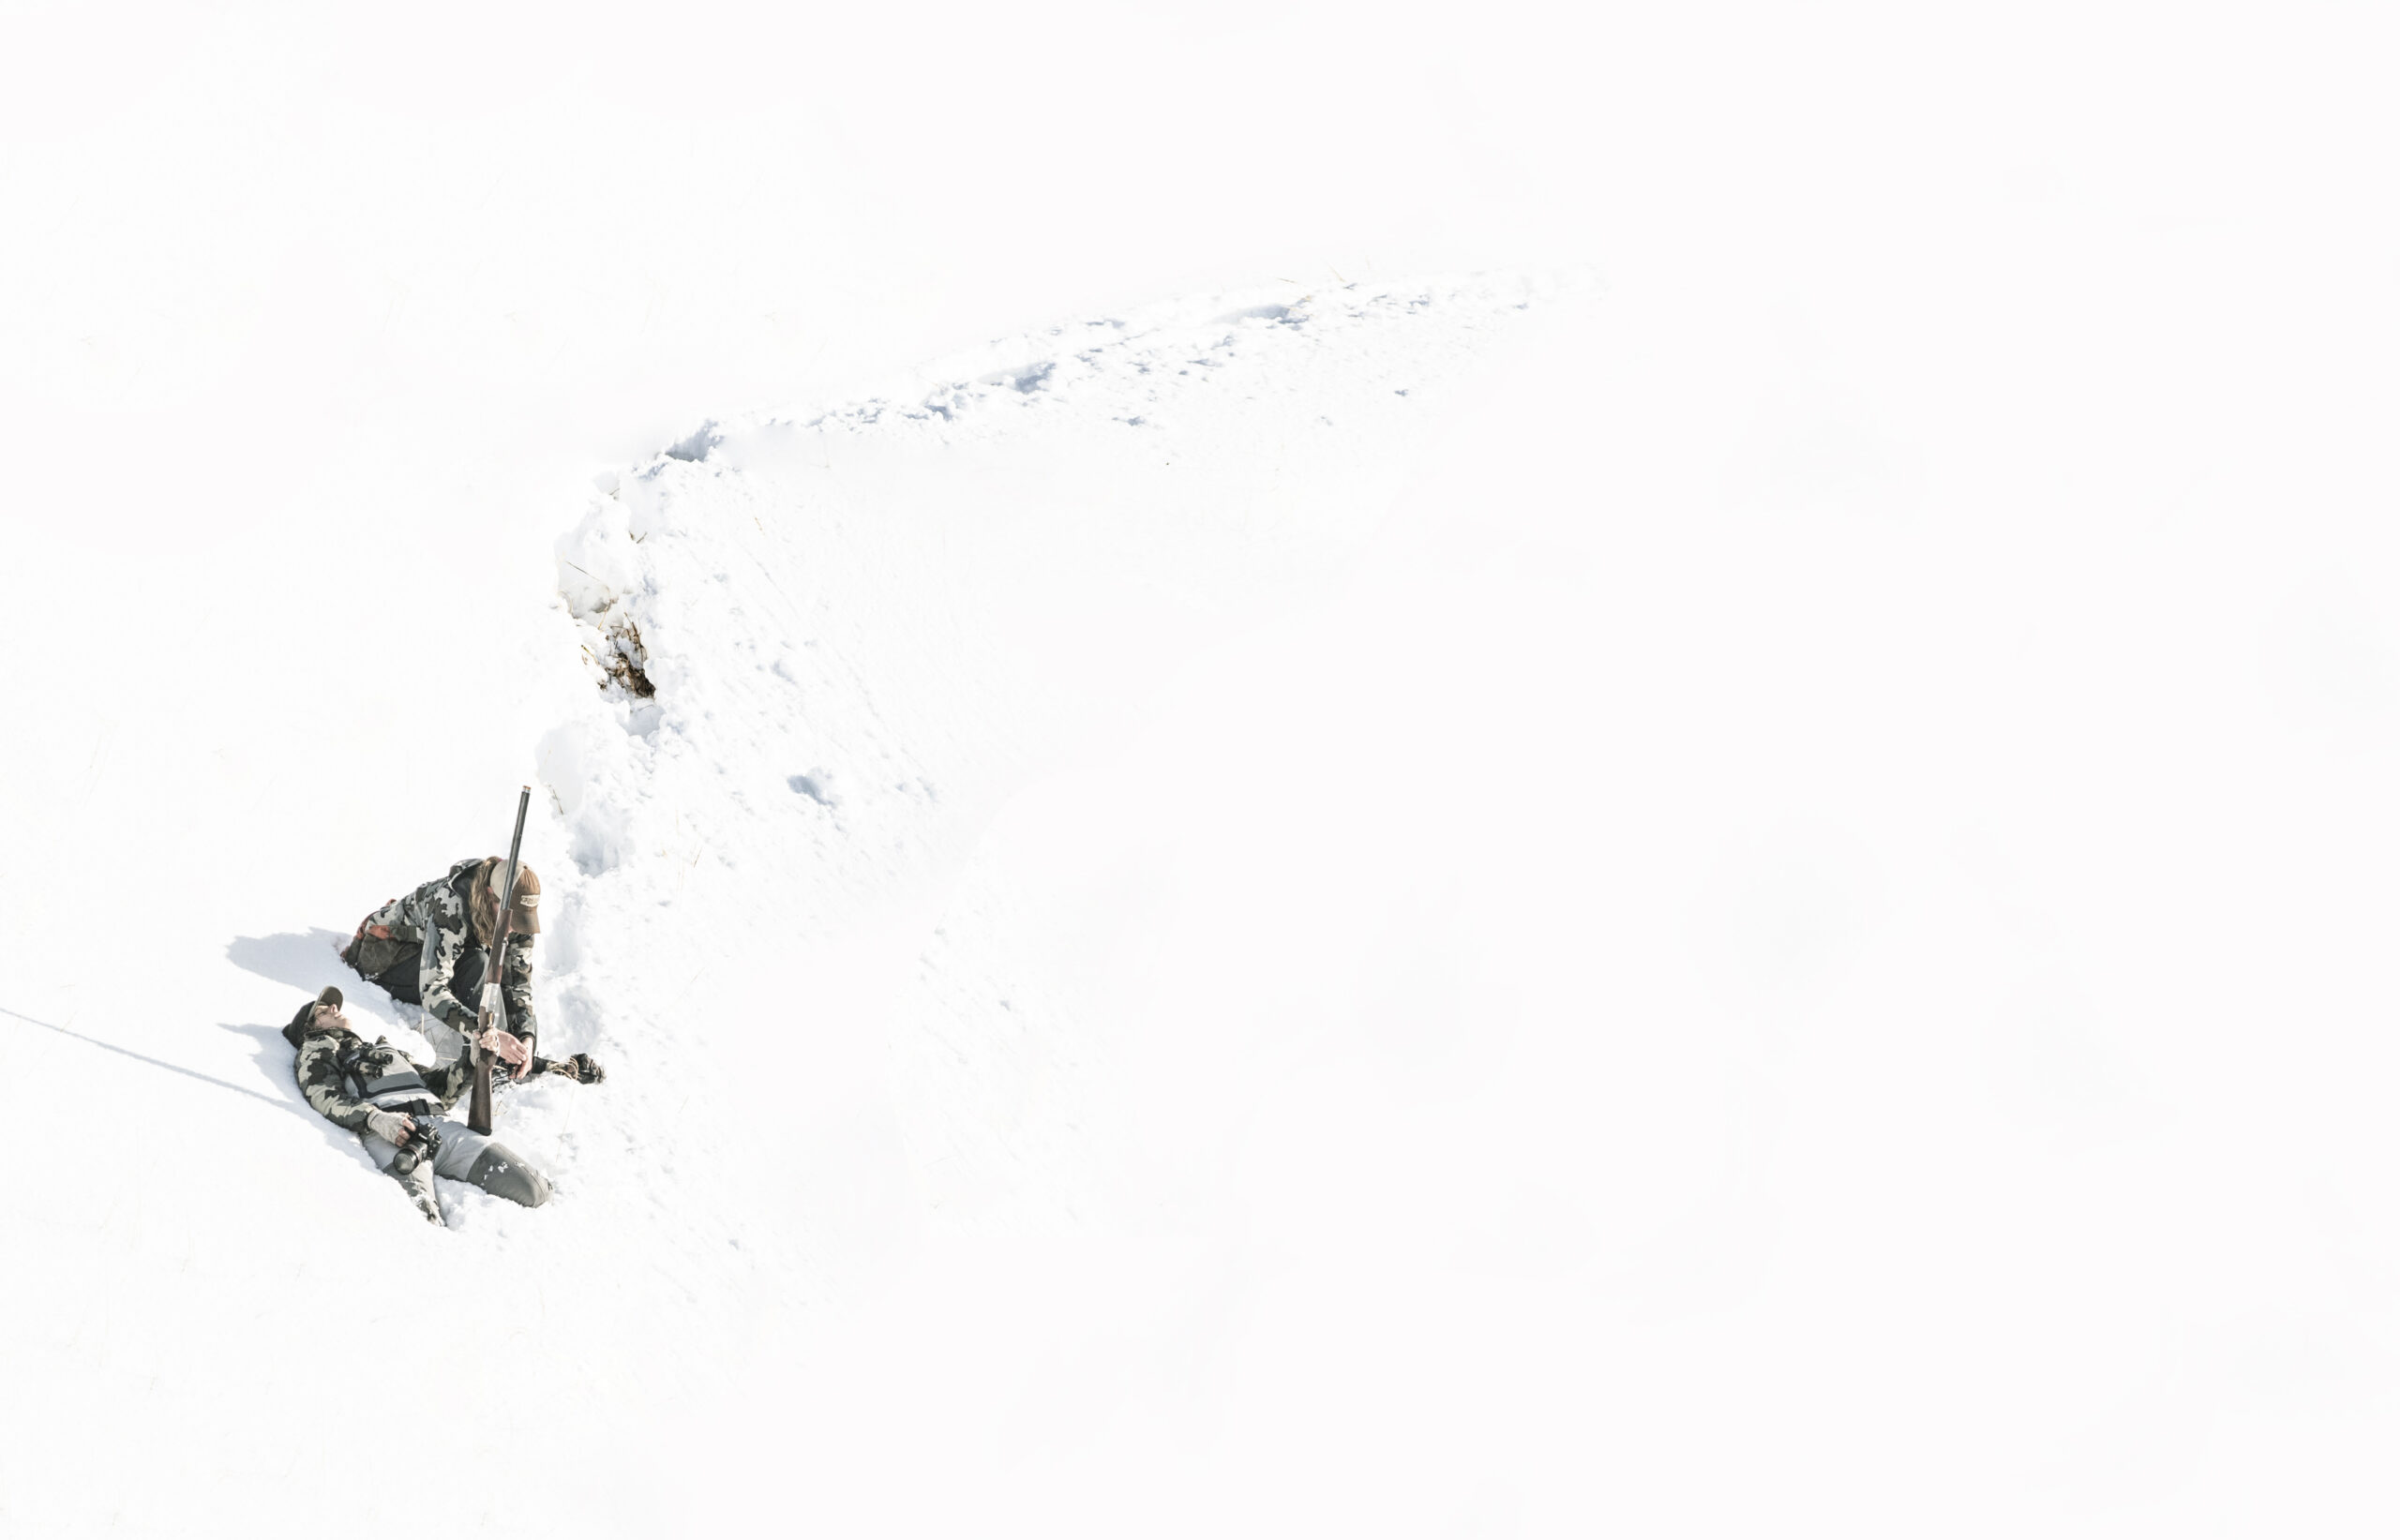 Hunting ptarmigan in the unseasonable snow on Adak.